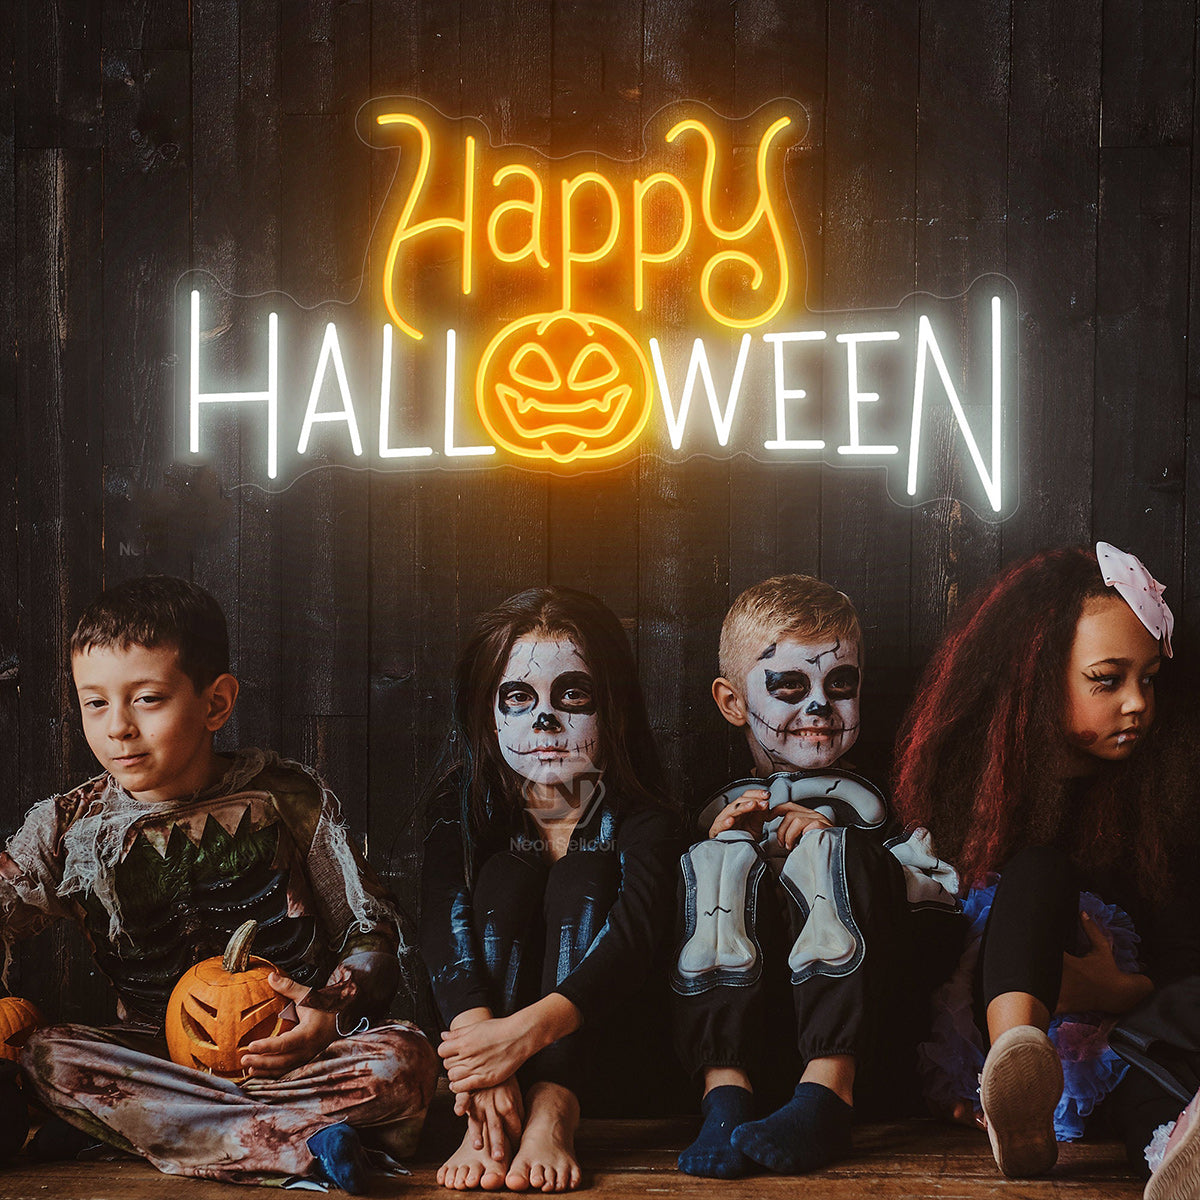 NEONIP-100% Handmade Happy Halloween Neon Sign, Pumpkin Decor